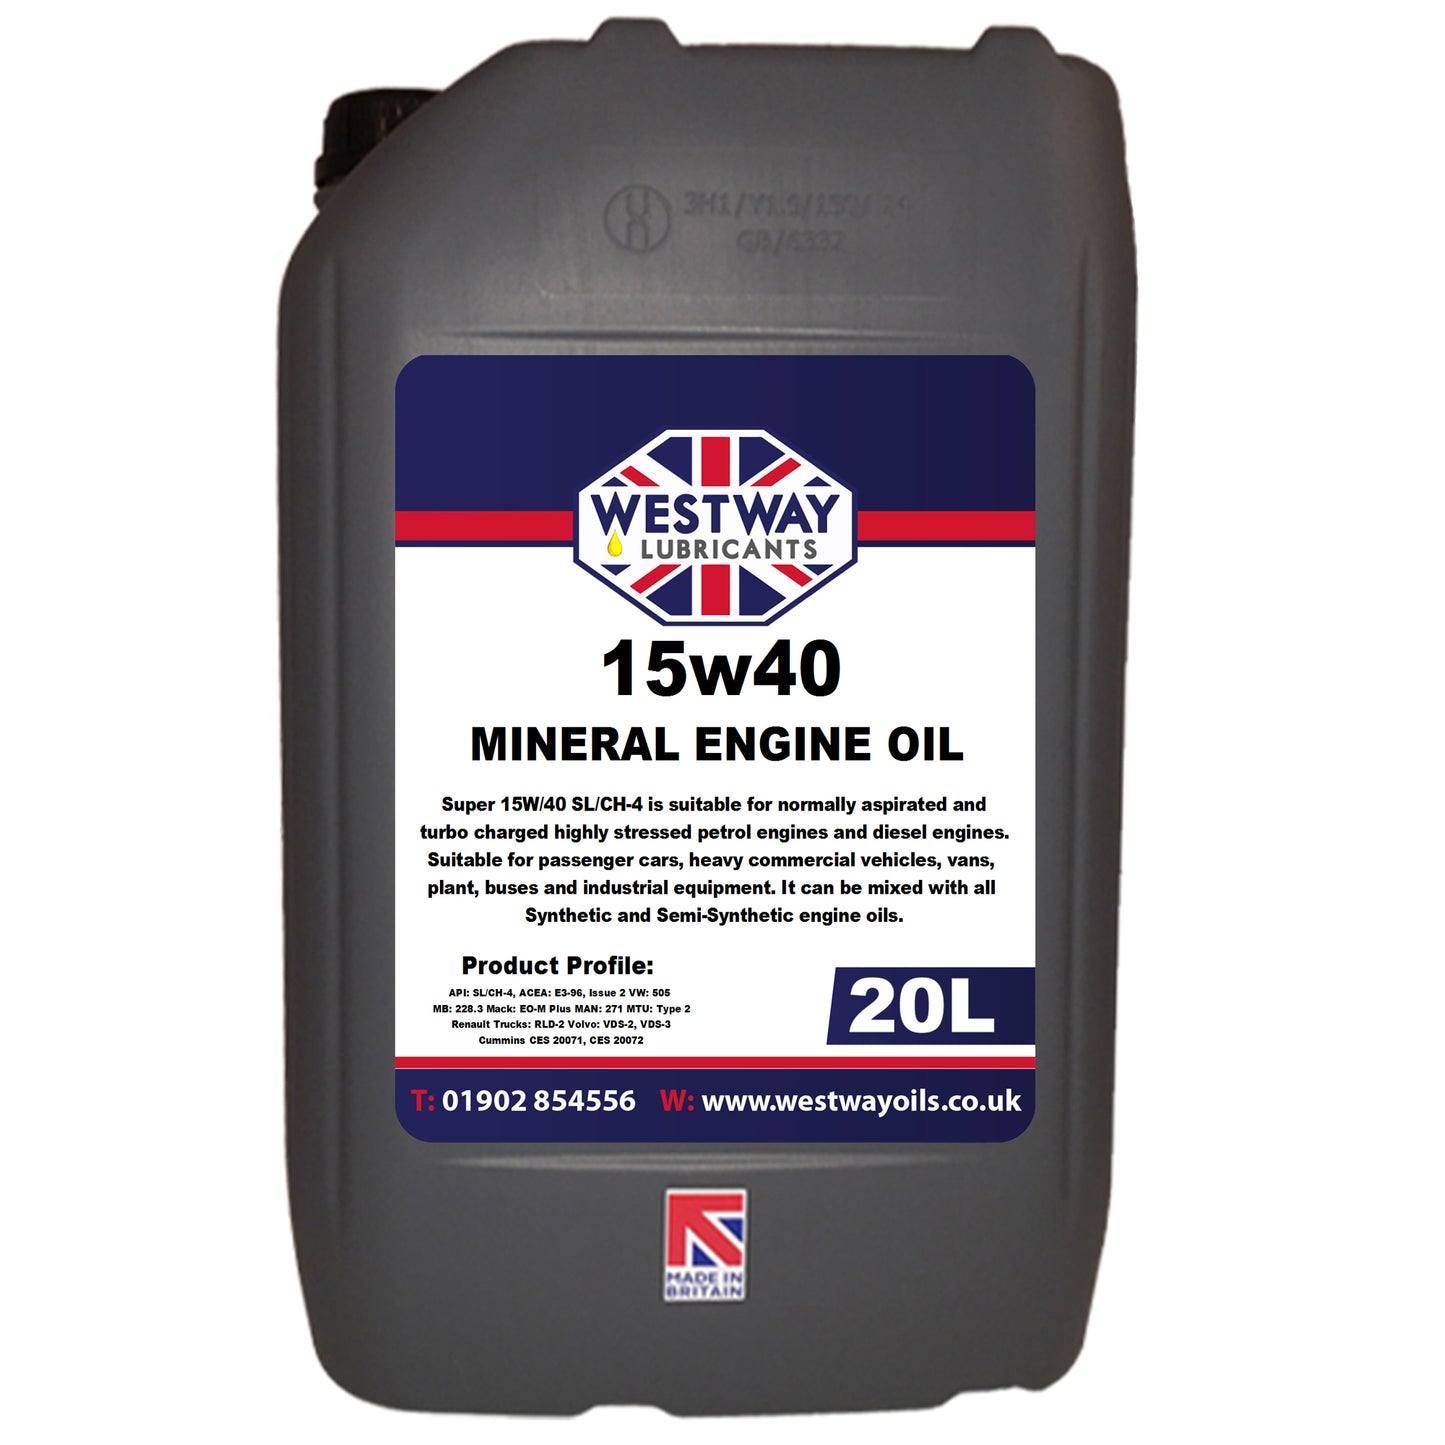 15w40 Mineral Engine Oil Petrol / Diesel